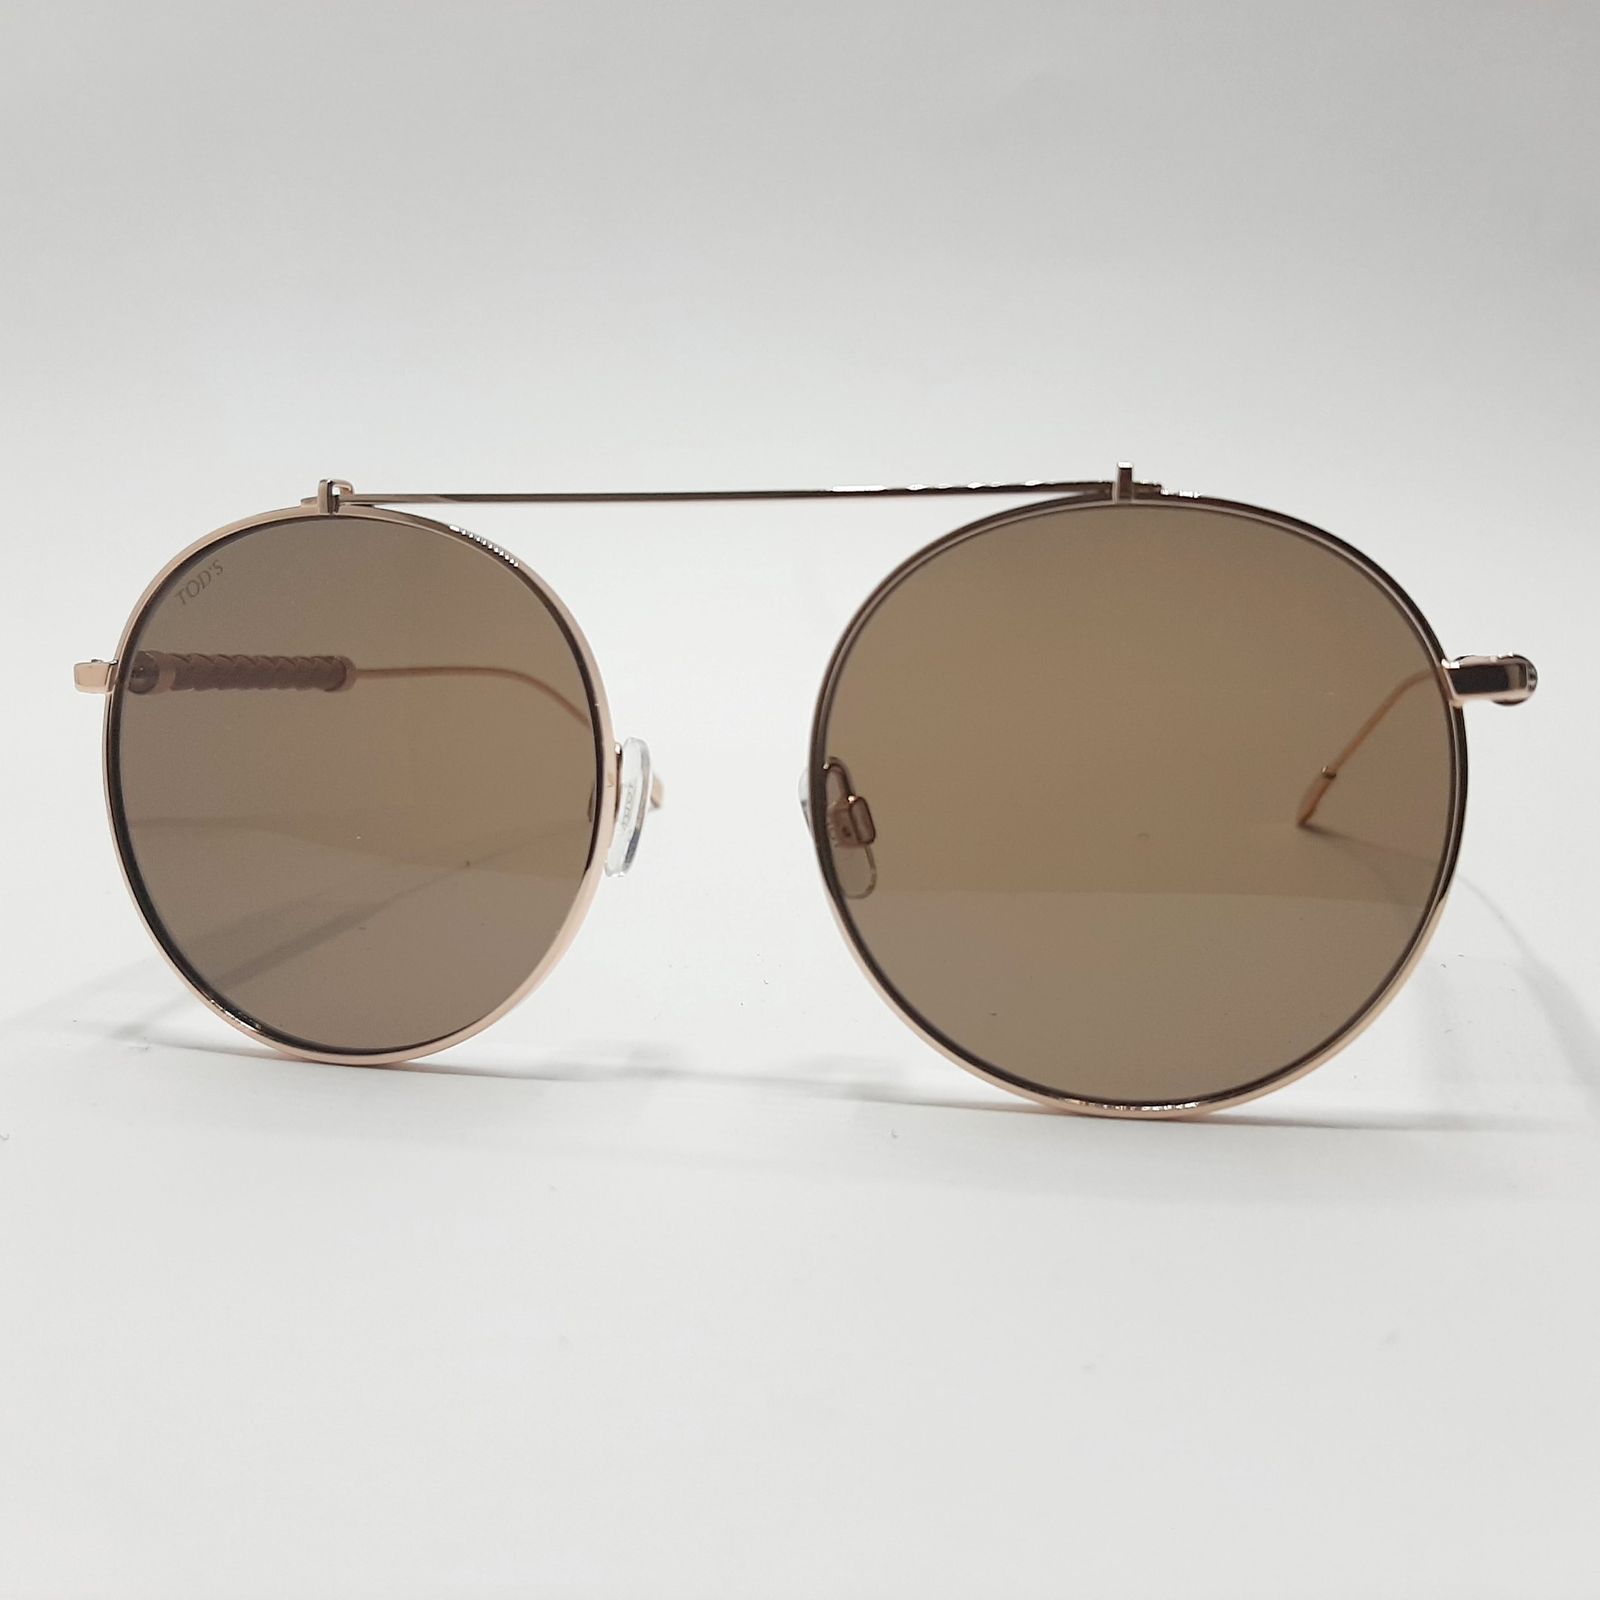 عینک آفتابی تادس مدل TO198c2 -  - 2